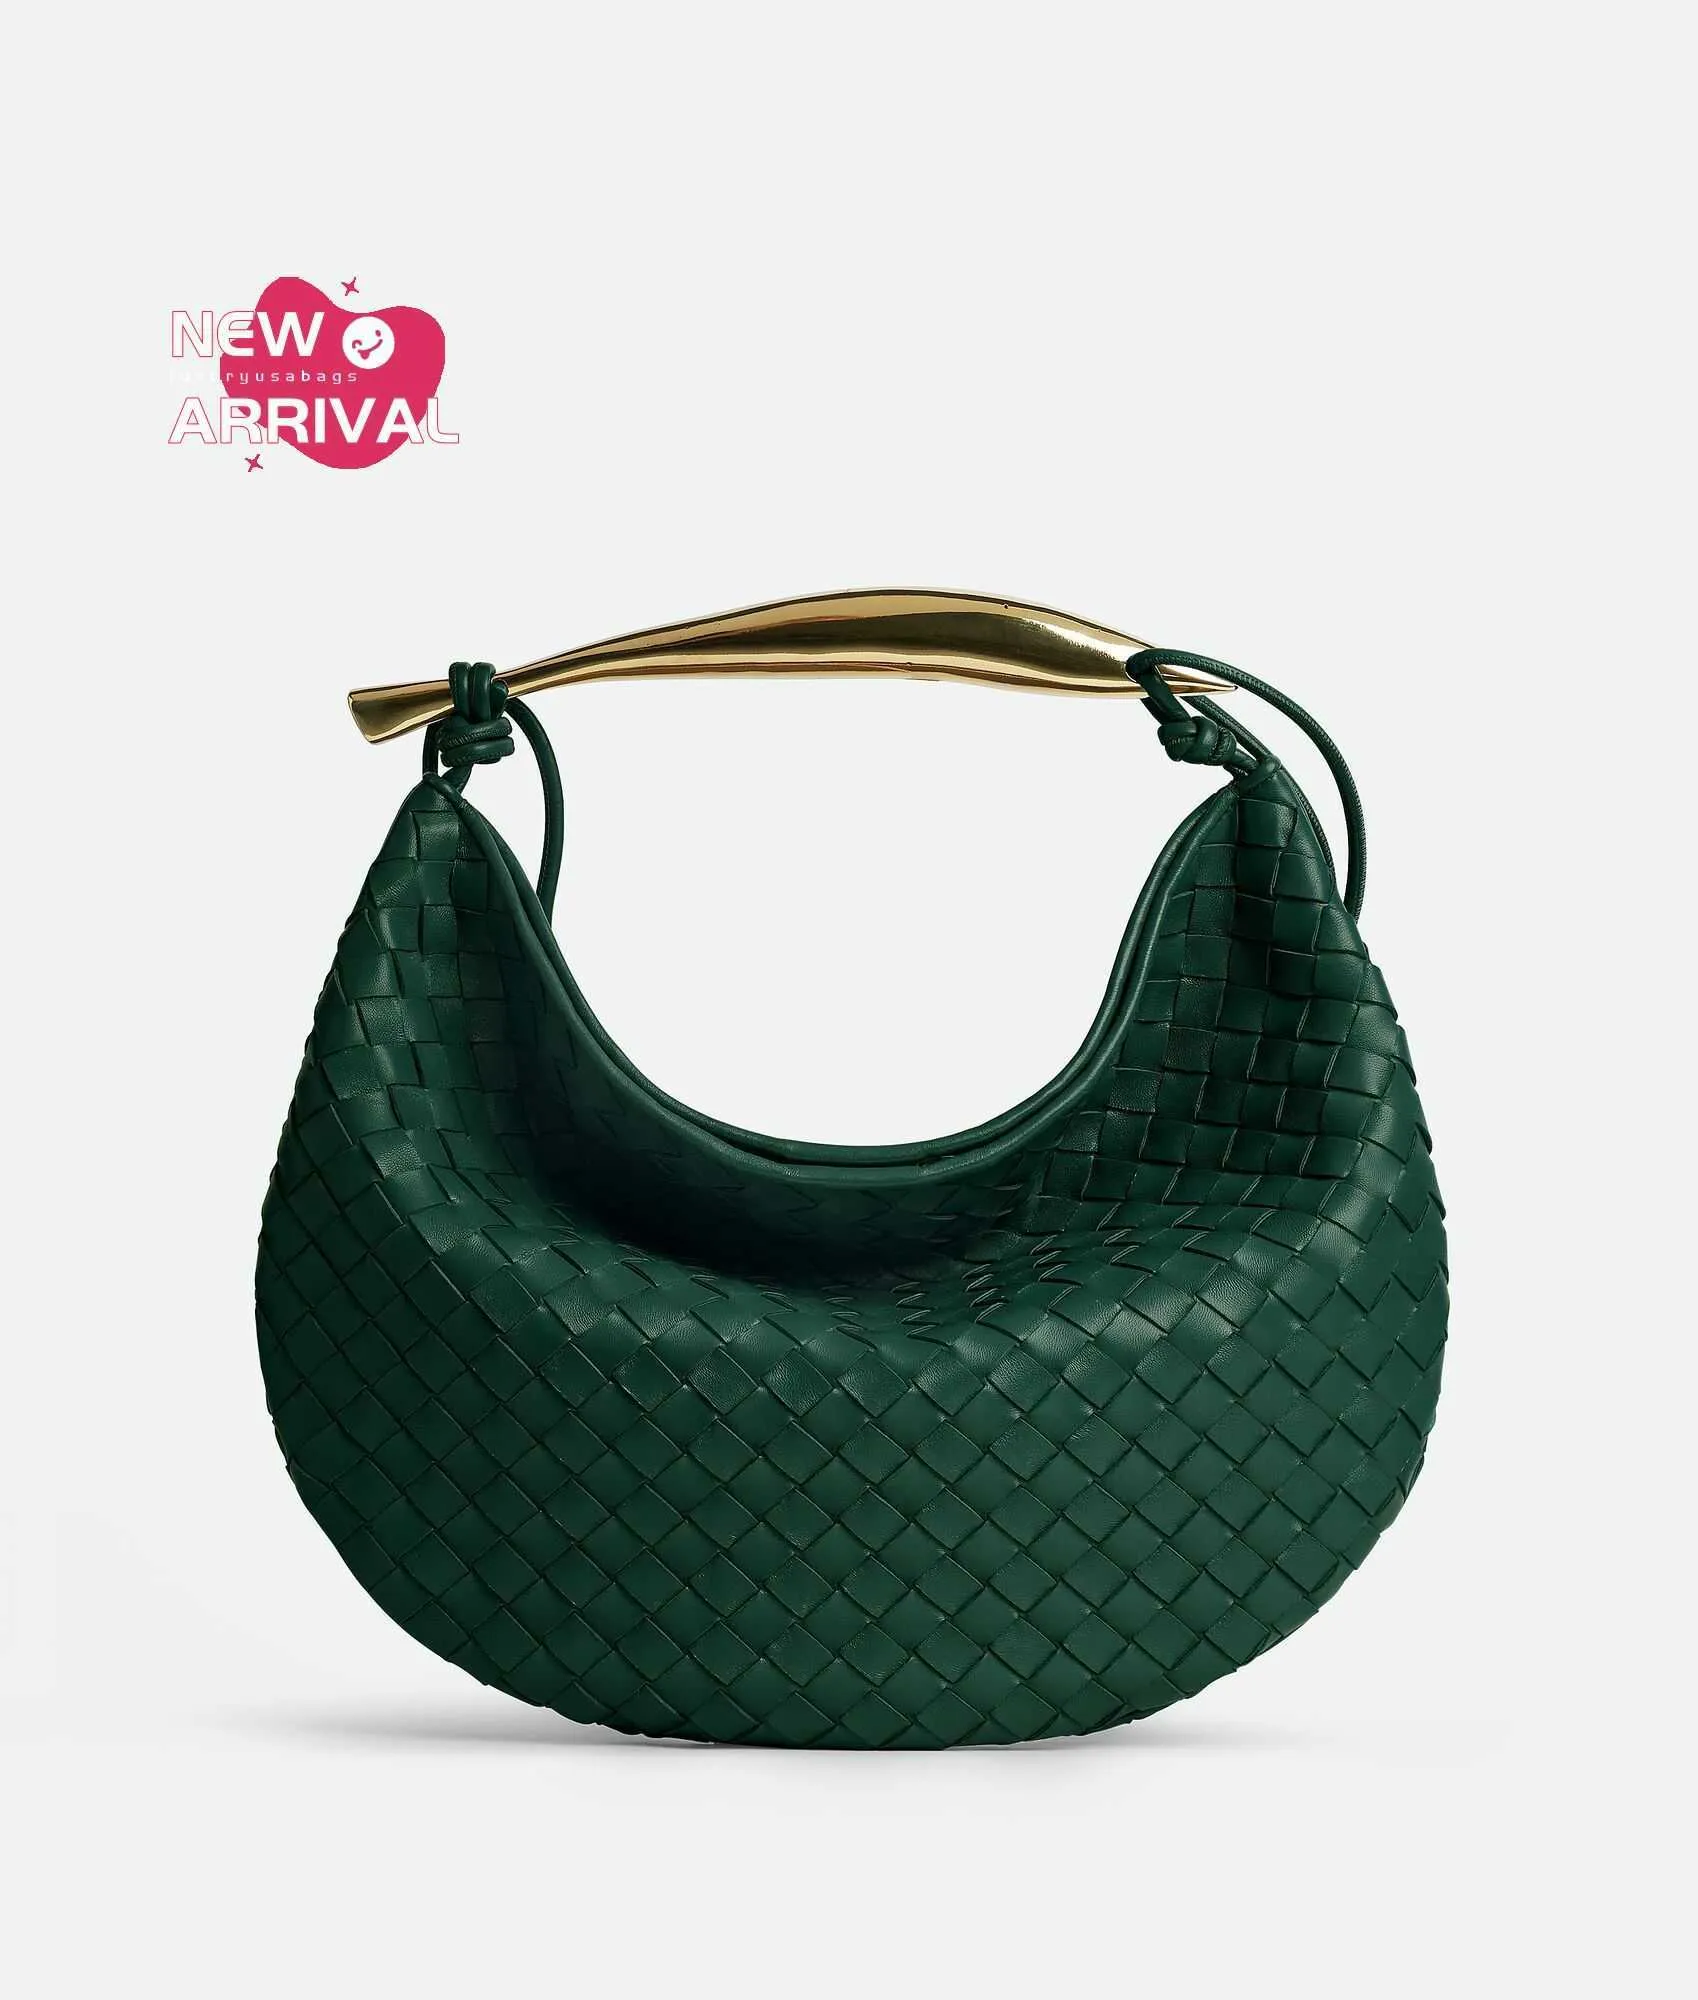 Дизайнерская женская сумка средняя сардина Botegaveneta средняя мешающая мешка на плечо с скульптурной металлической верхней ручкой и плечевым ремнем изумрудно -зеленый